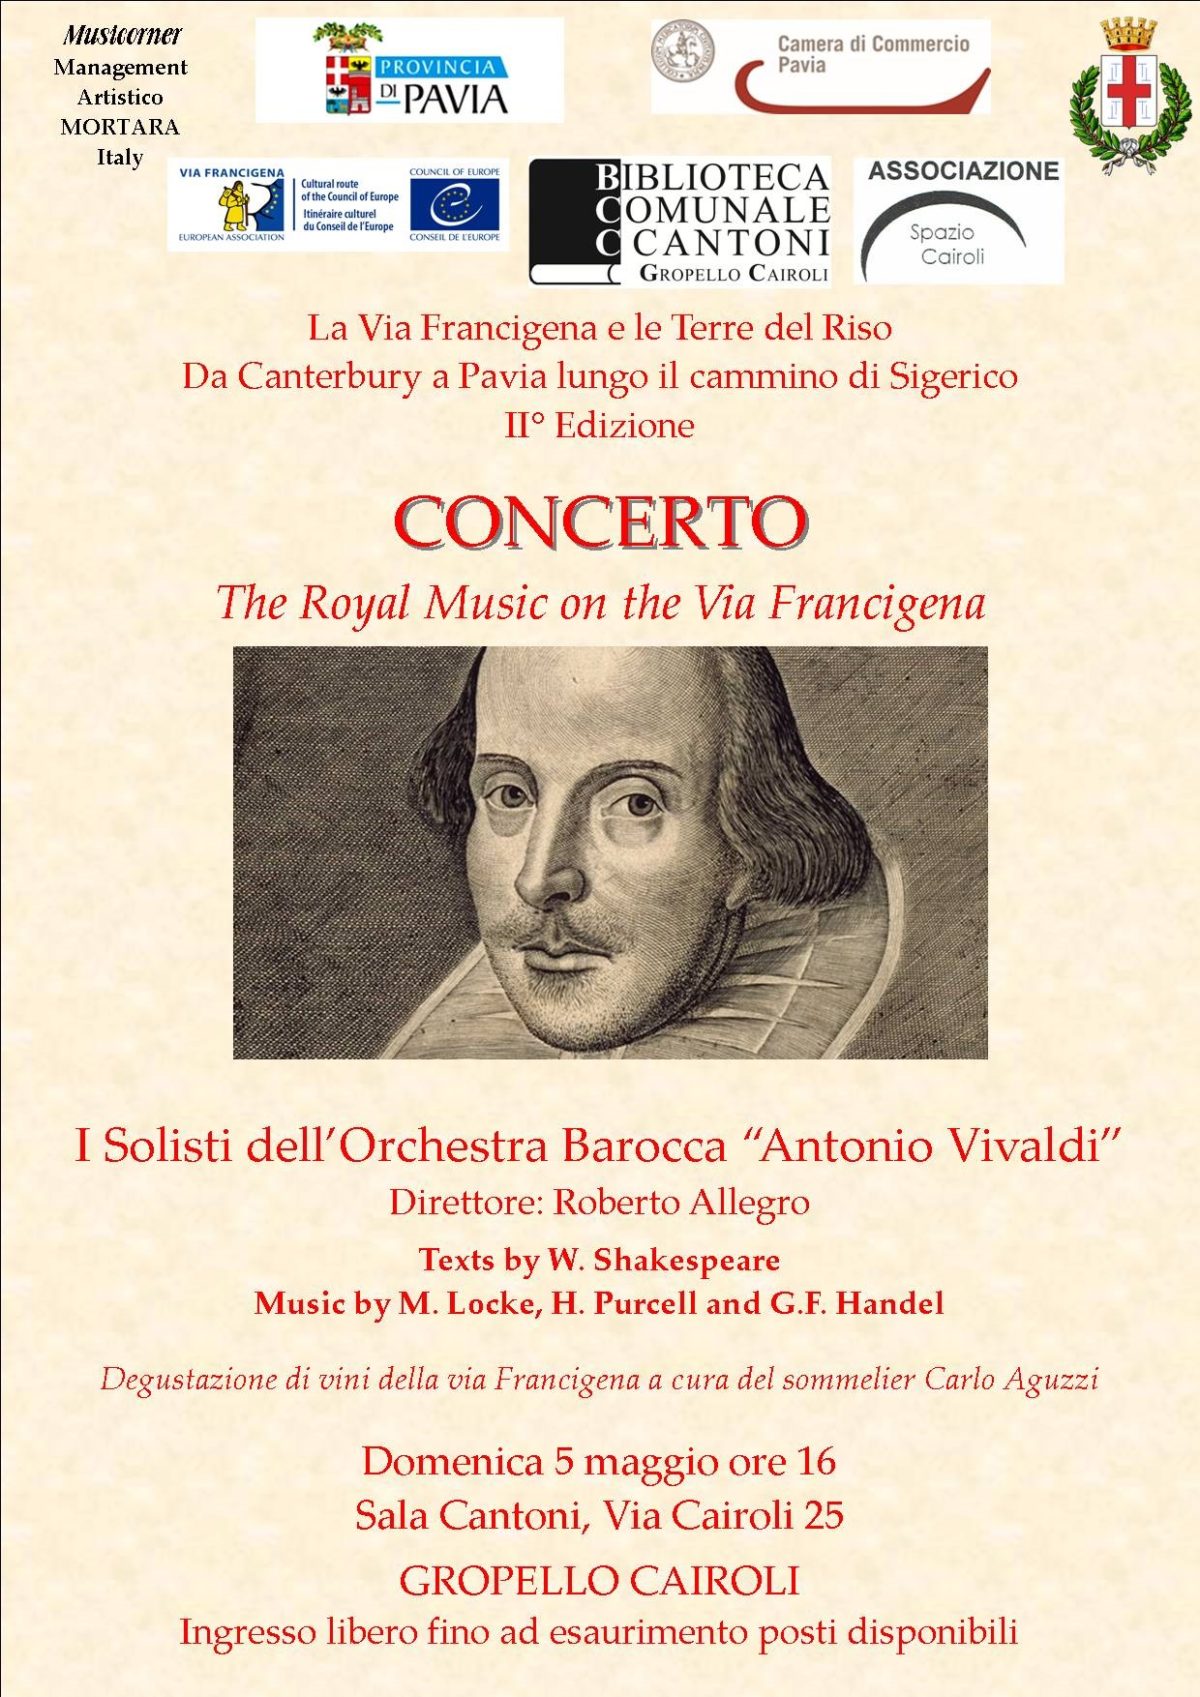 domenica 5 maggio ore 16,00 concerto “The Royal Music on the Via Francigena”